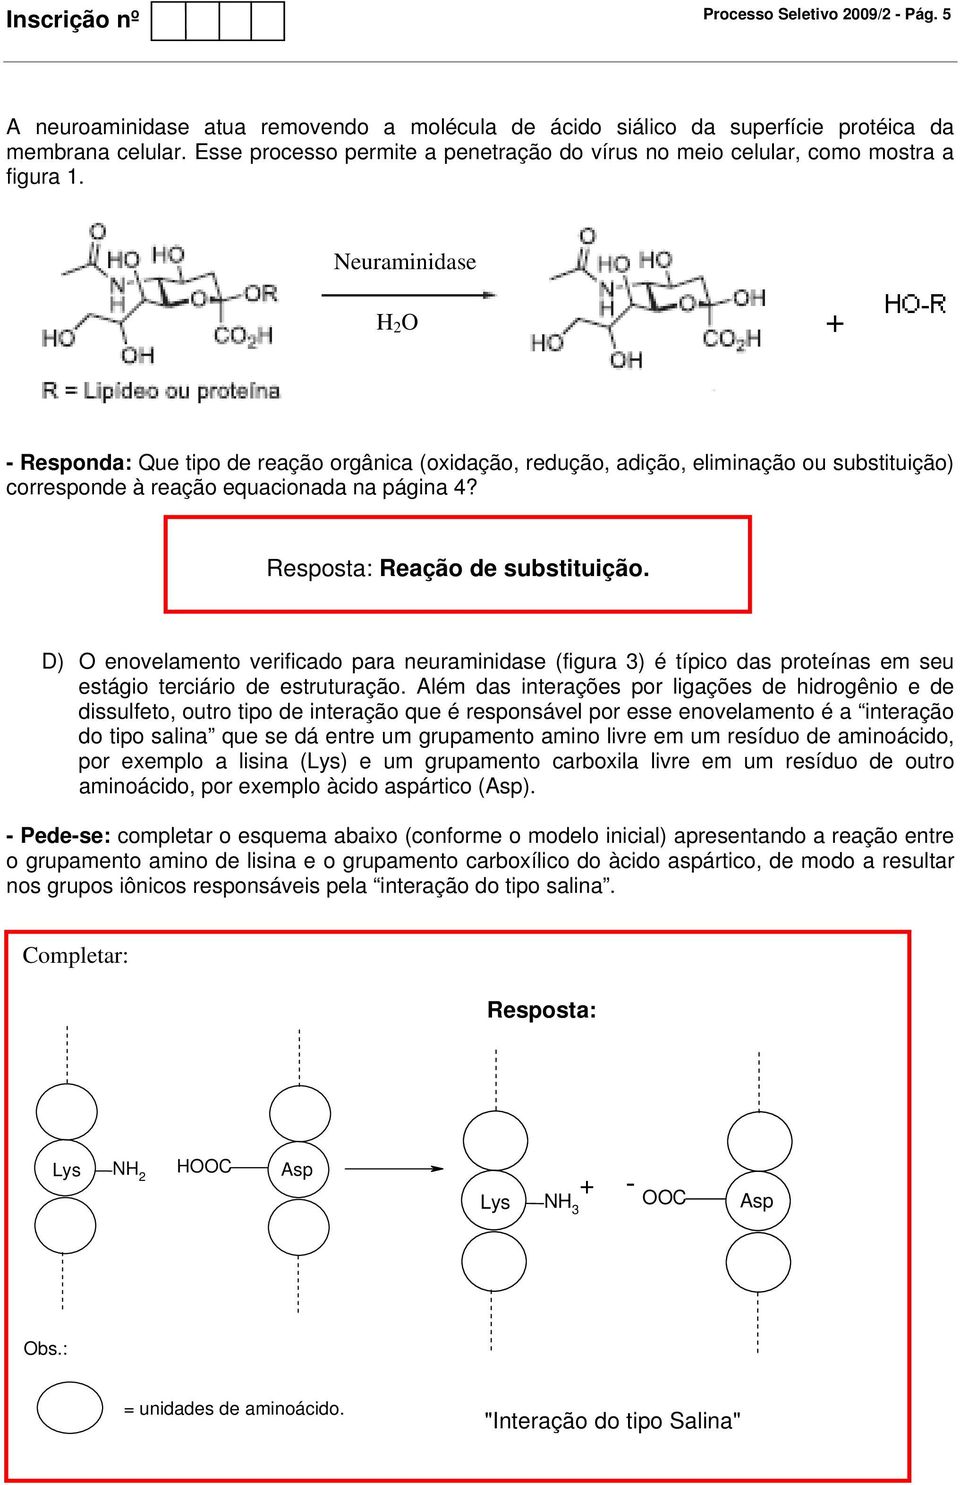 Neuraminidase 2 - Responda: Que tipo de reação orgânica (oidação, redução, adição, eliminação ou substituição) corresponde à reação equacionada na página 4? Resposta: Reação de substituição.